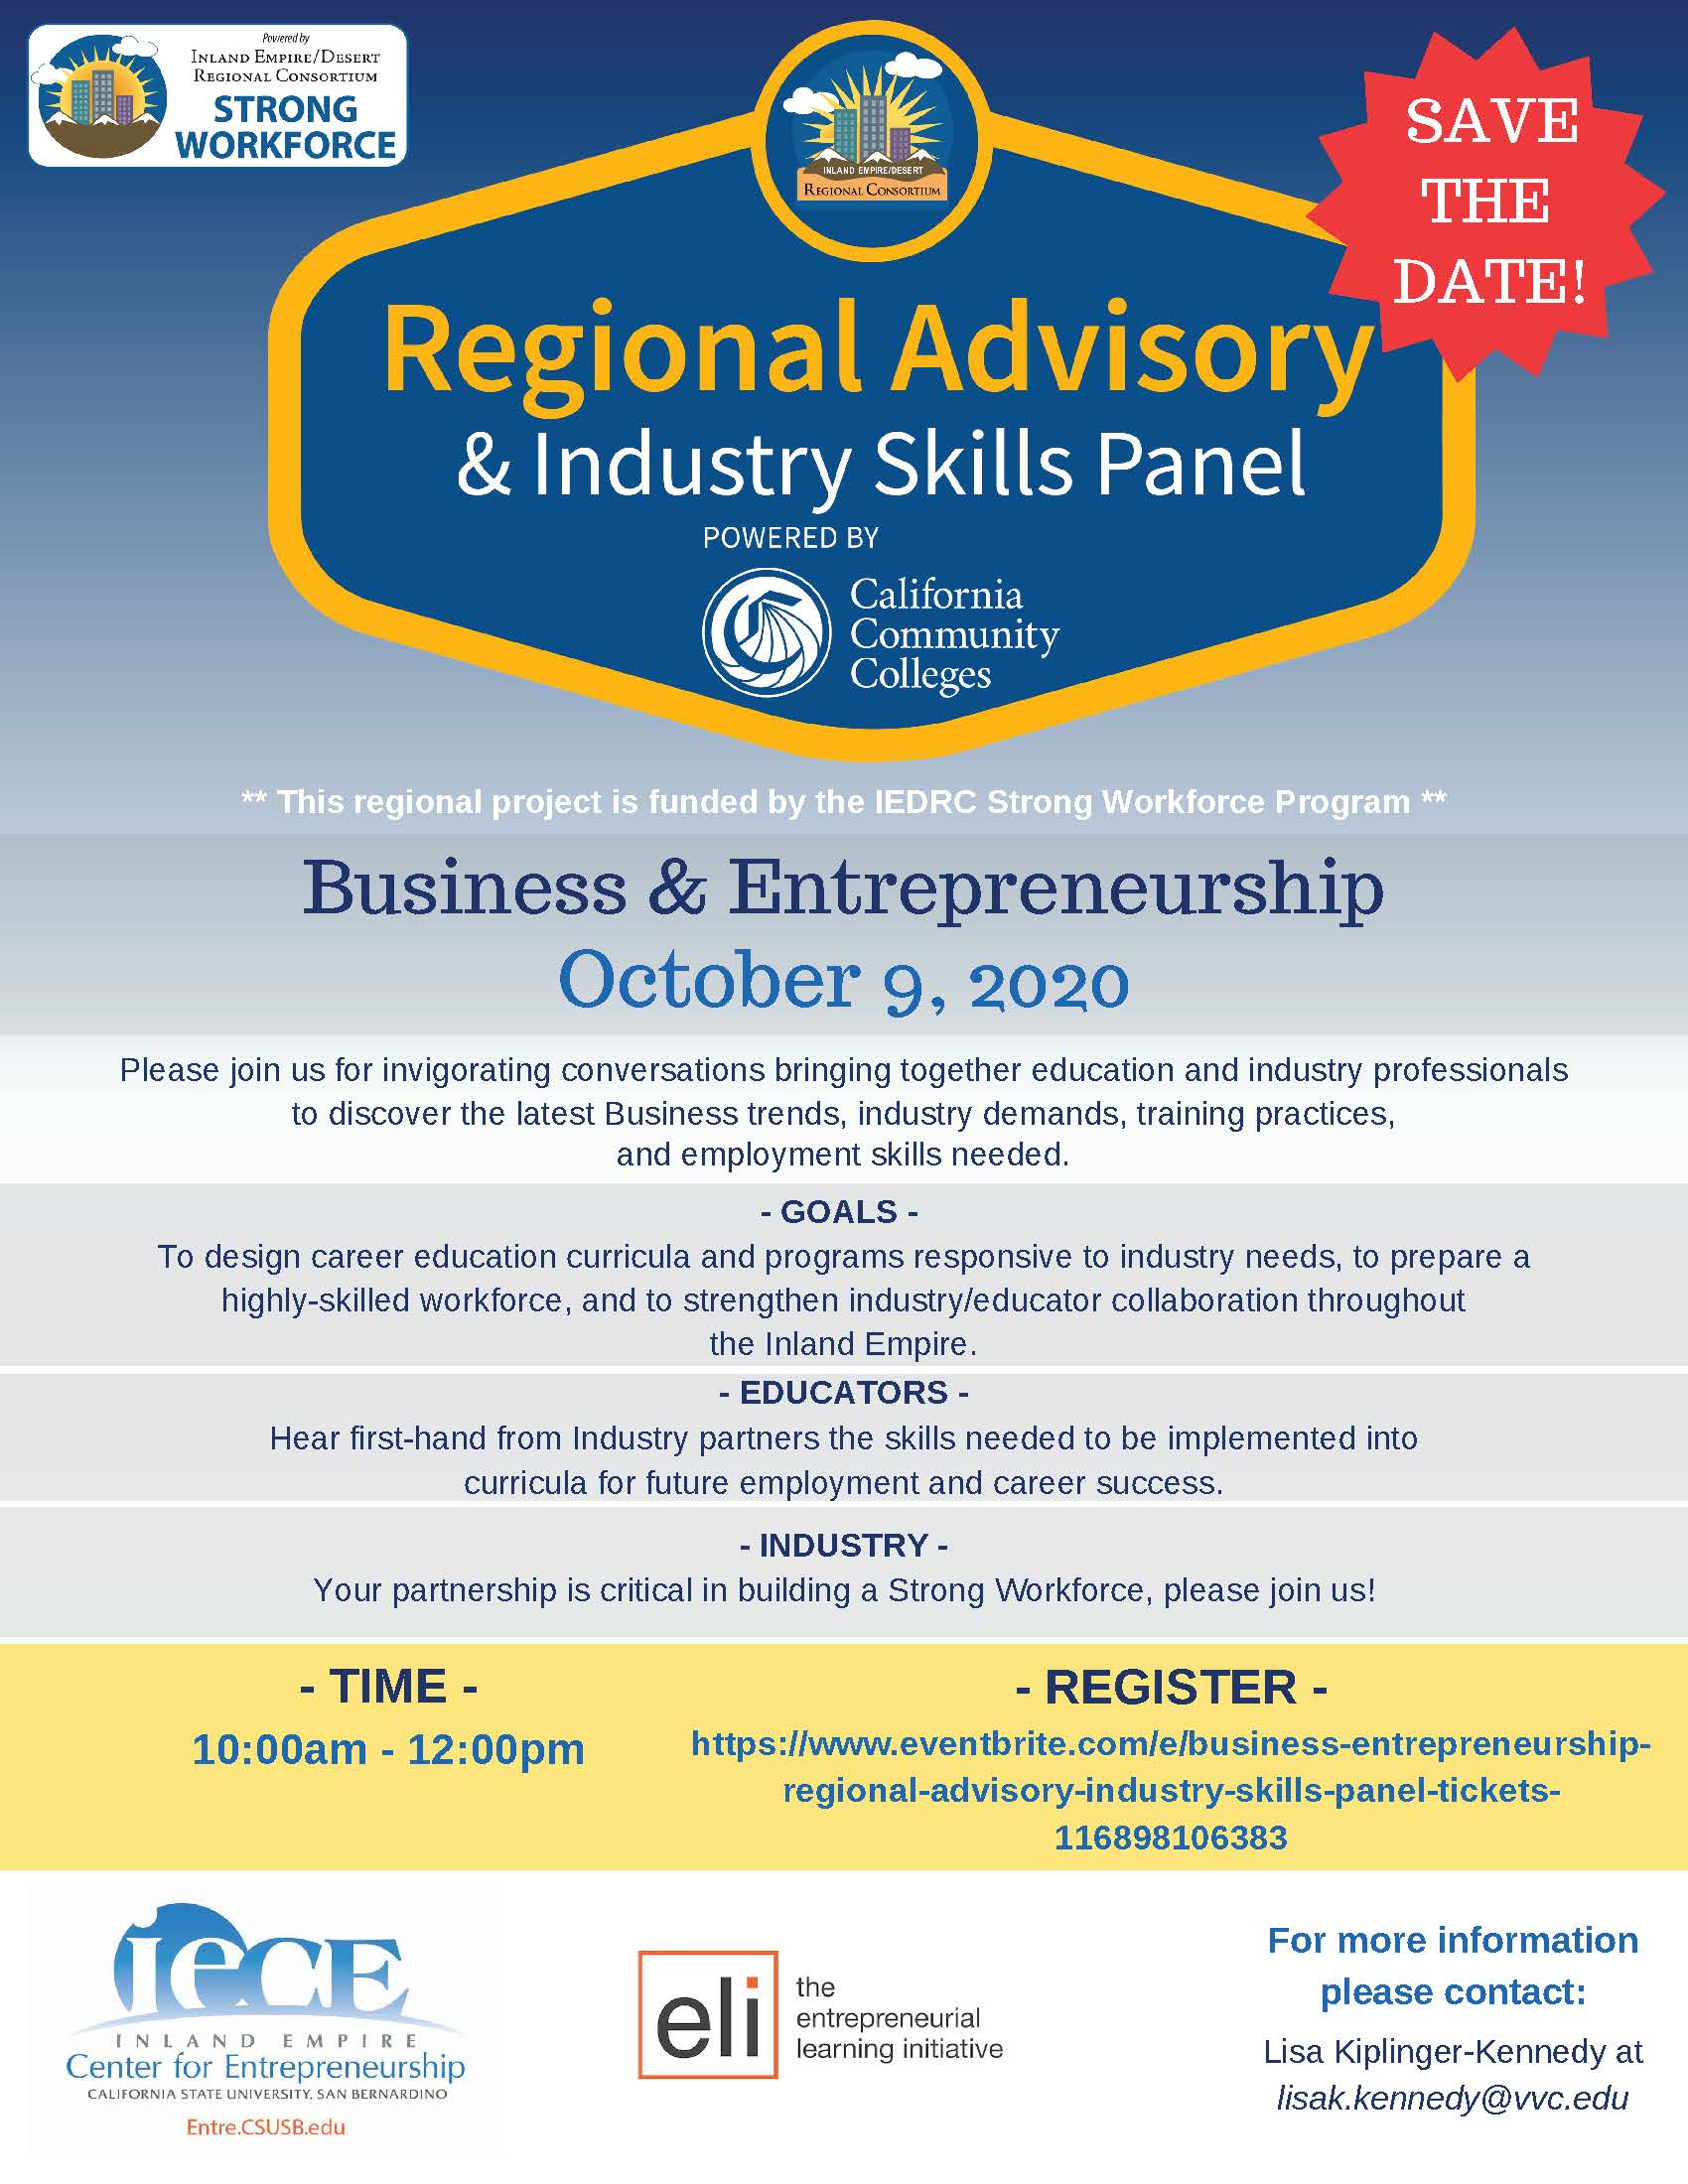 Business & Entrepreneurship Regional Advisory & Industry Skills Panel